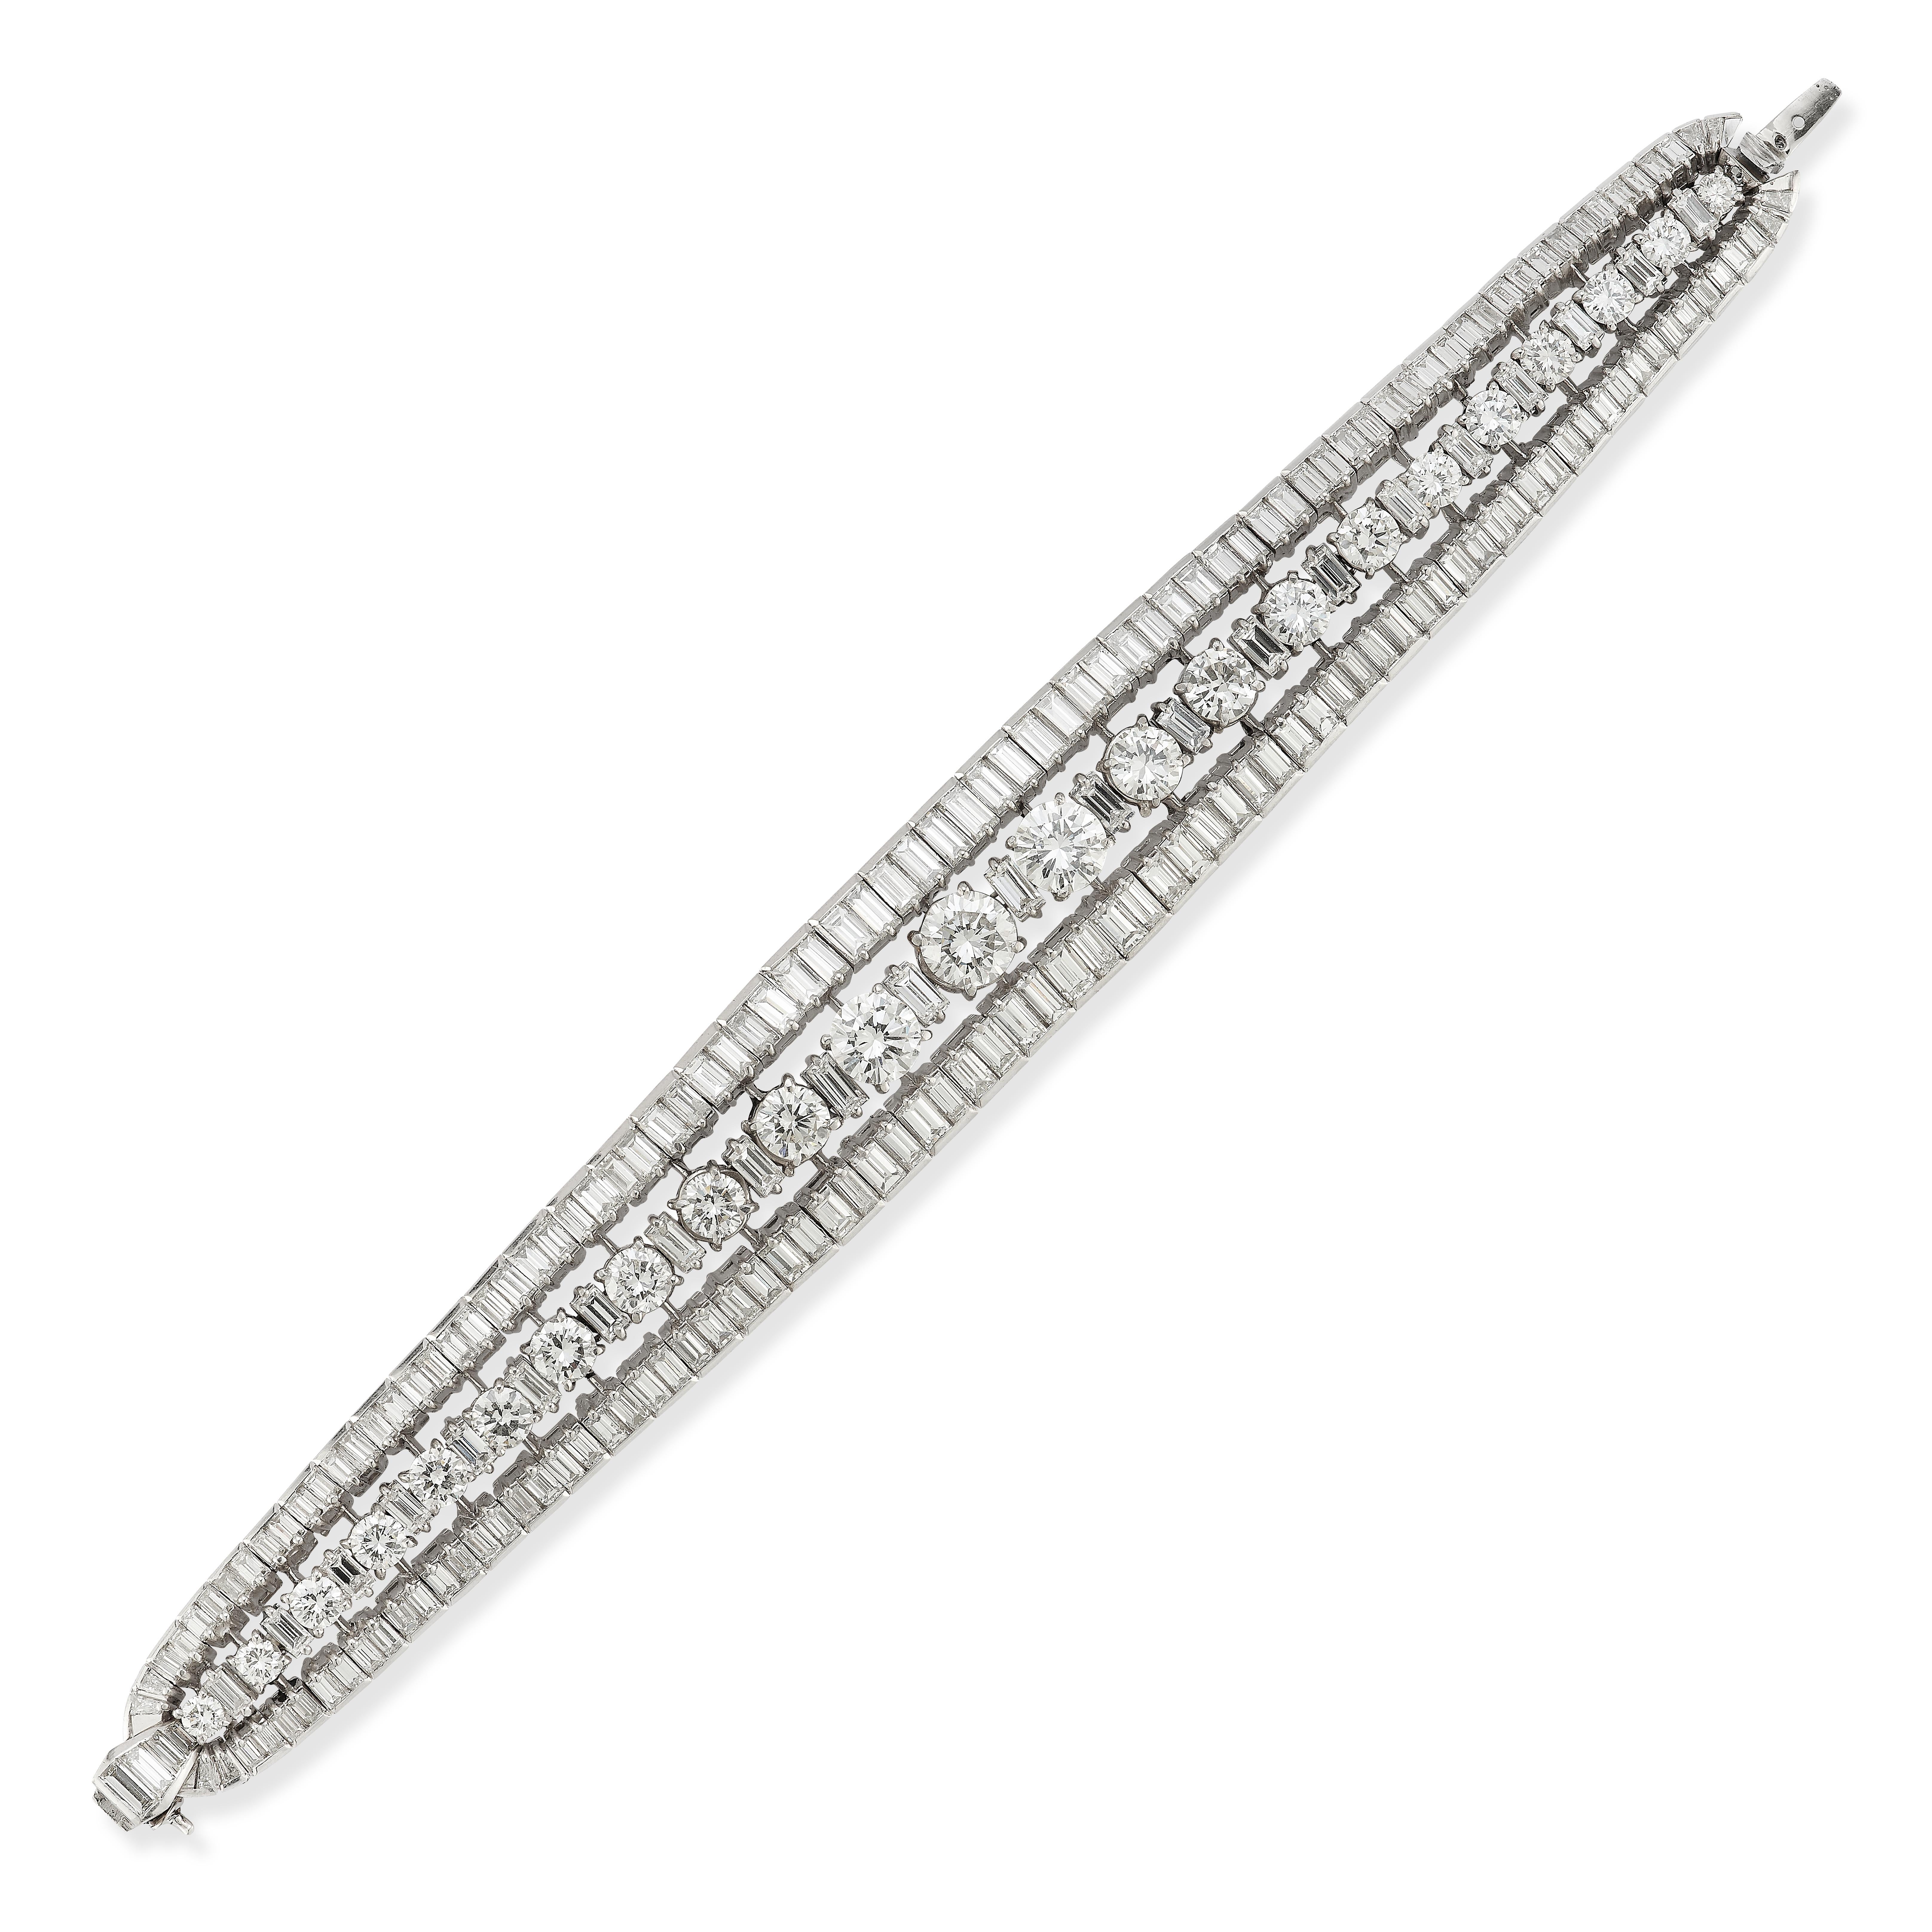 Mid Century Diamant-Armband

Armband aus Platin, besetzt mit Diamanten im Rund- und Baguetteschliff

Begleitet von einem GAL-Bericht, der das Gesamtgewicht der Diamanten dieses Armbands mit 27,40 Karat angibt

Länge: 7